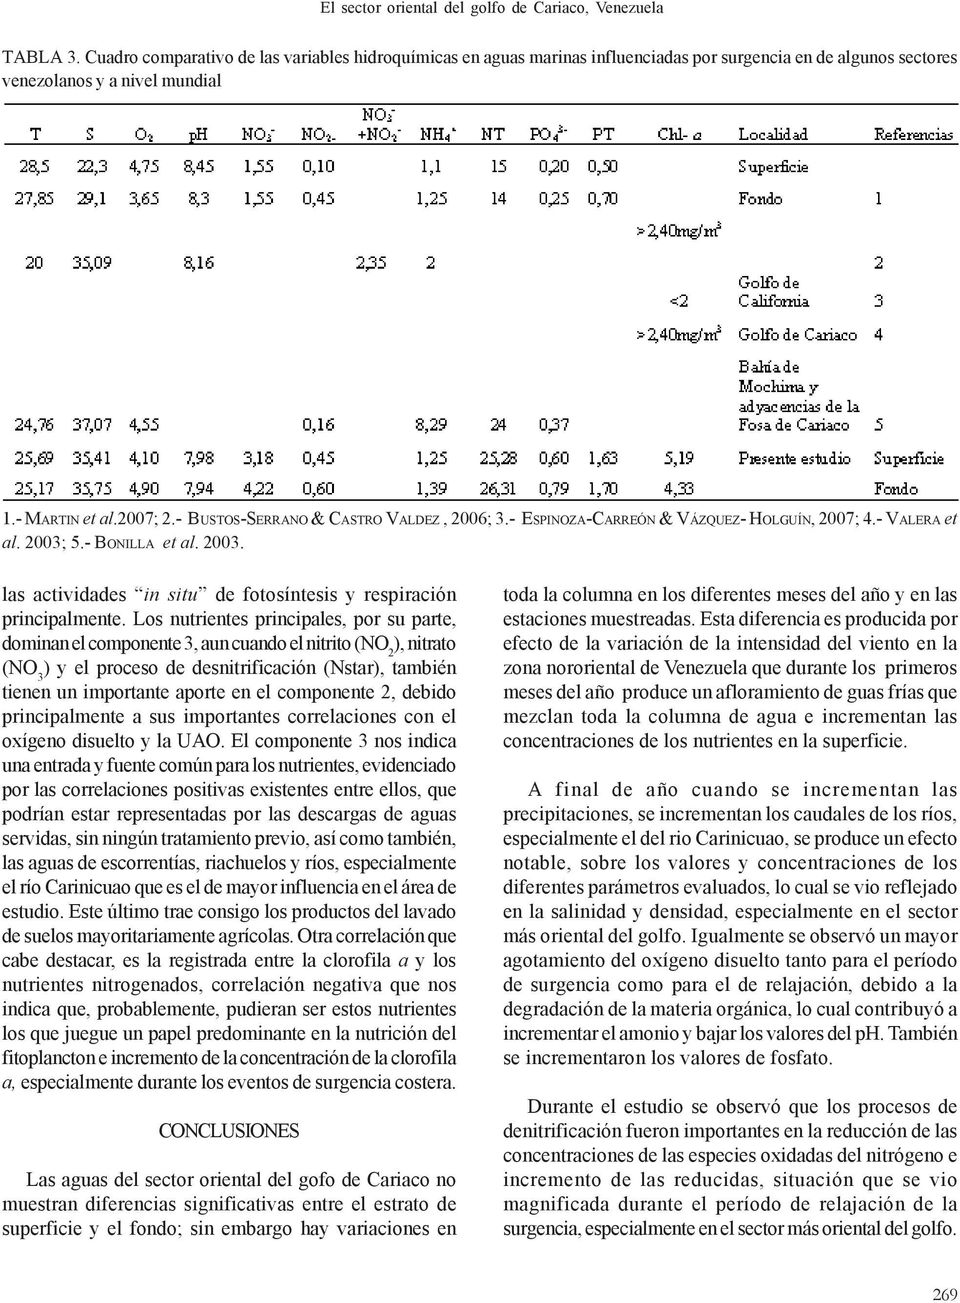 - BUSTOS-SERRANO & CASTRO VALDEZ, 2006; 3.- ESPINOZA-CARREÓN & VÁZQUEZ- HOLGUÍN, 2007; 4.- VALERA et al. 2003; 5.- BONILLA et al. 2003. las actividades in situ de fotosíntesis y respiración principalmente.